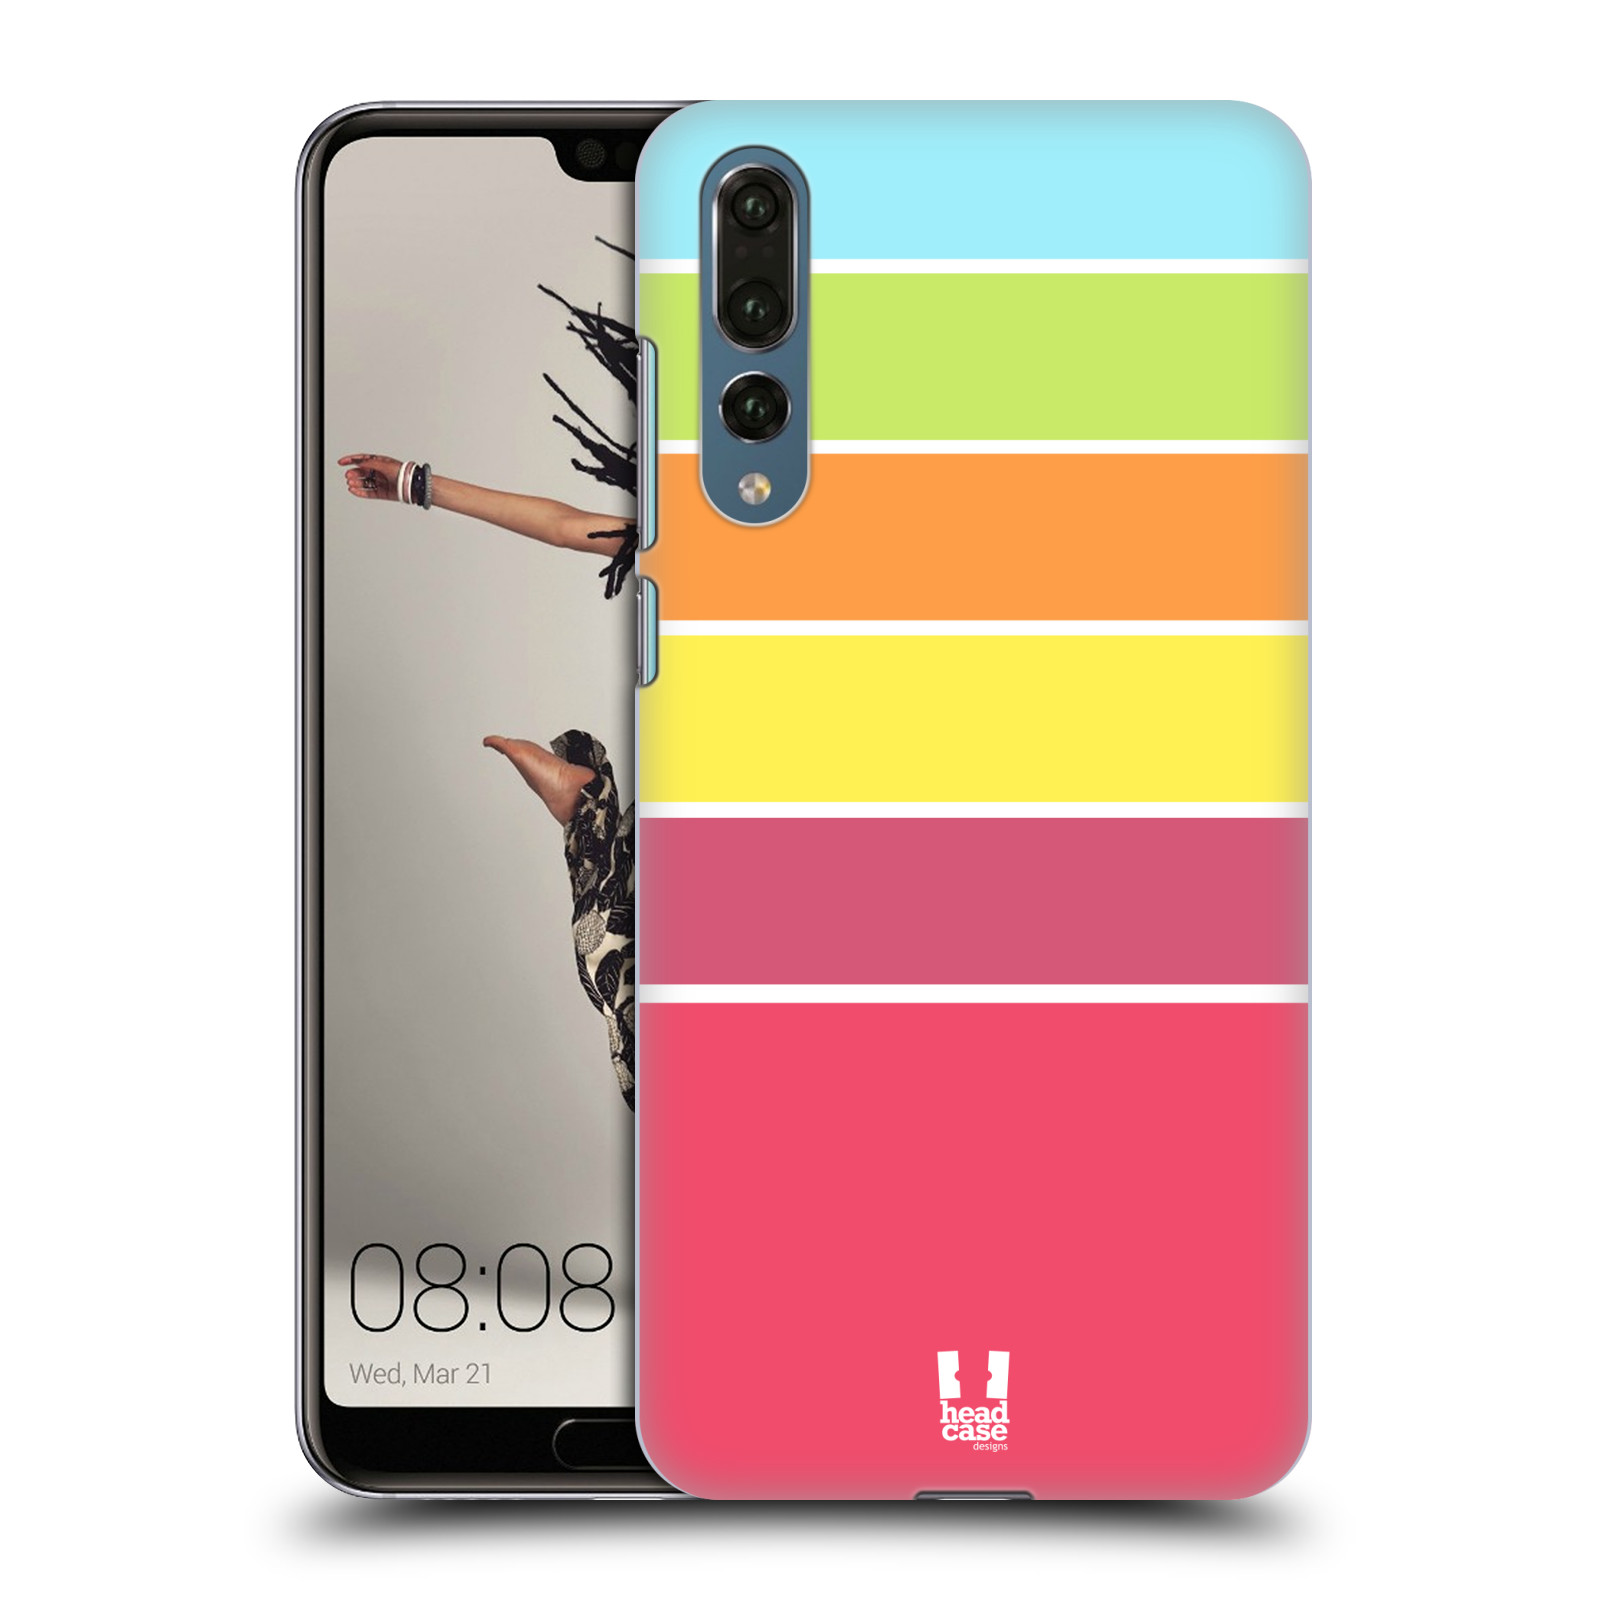 Zadní obal pro mobil Huawei P20 PRO - HEAD CASE - barevné pruhy růžová, oranžová